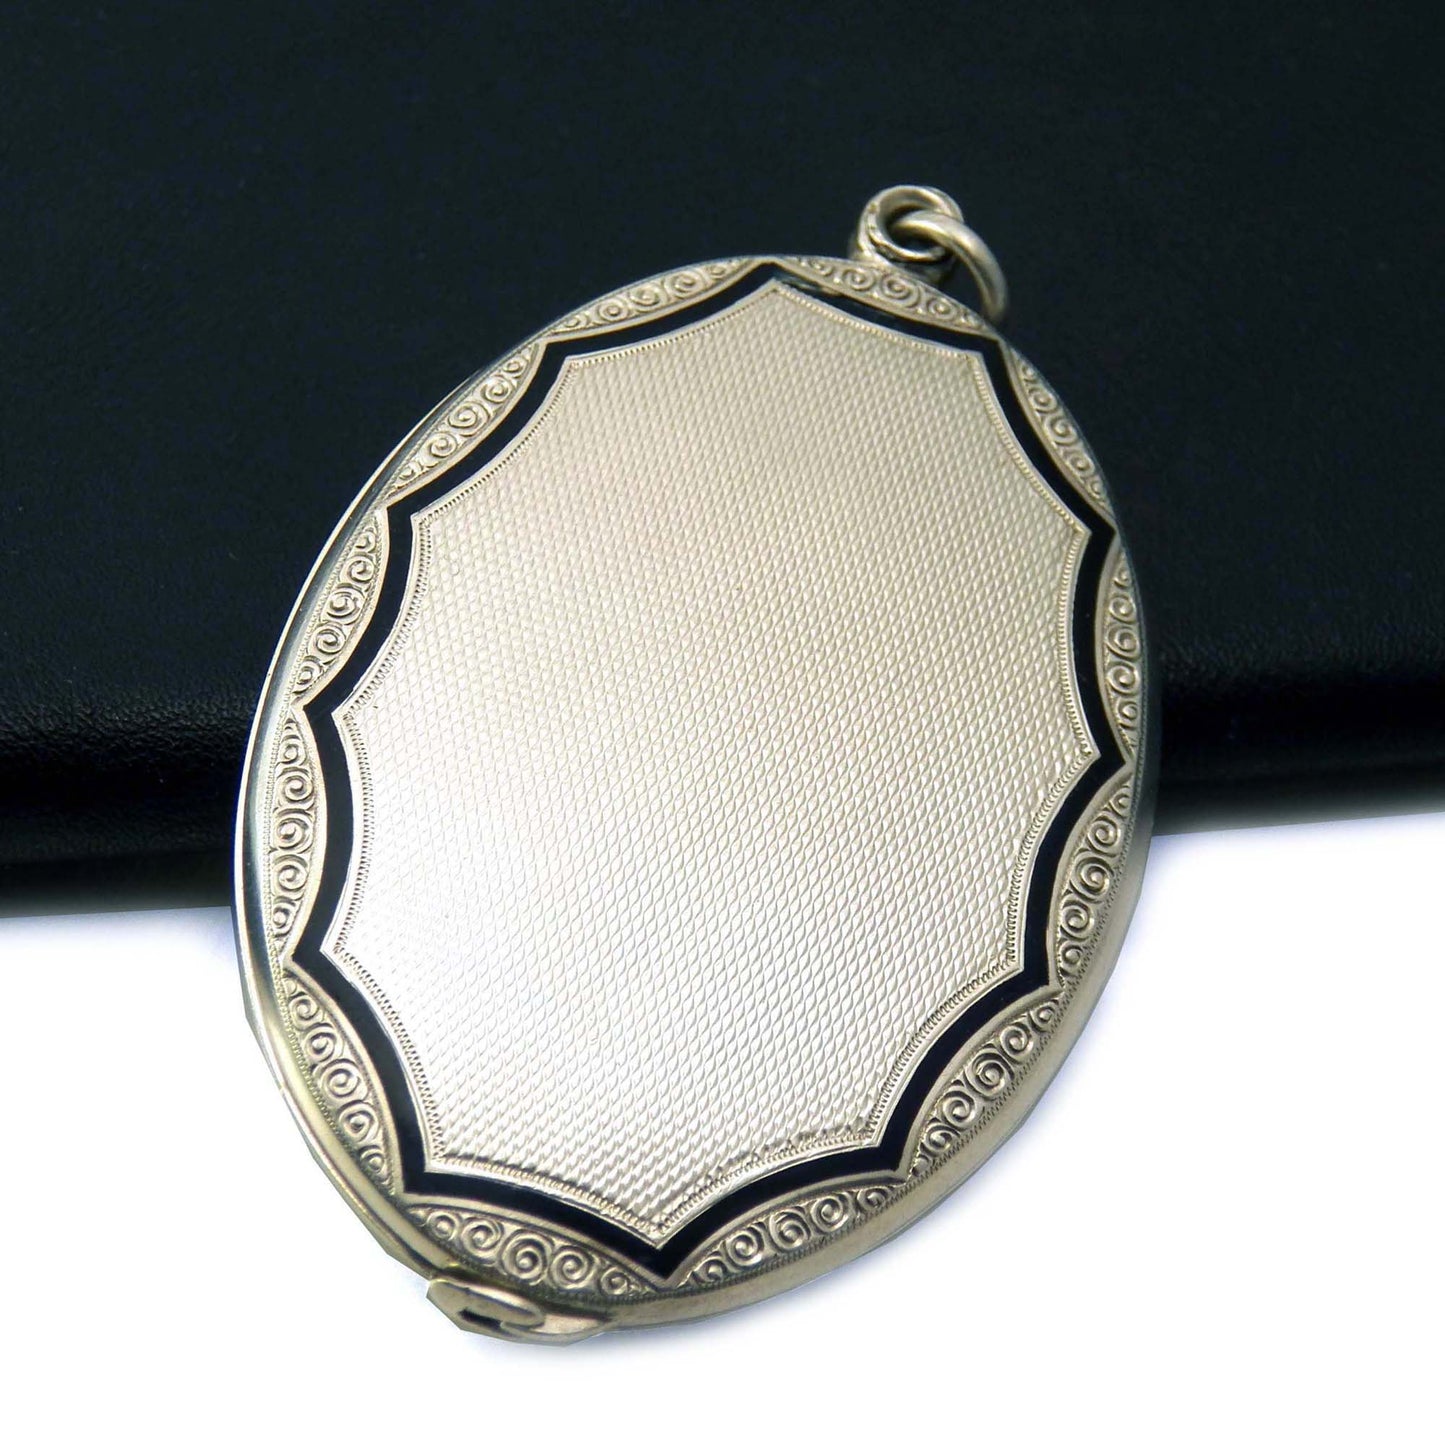 Antique slide locket in sterling silver with black enamel edging